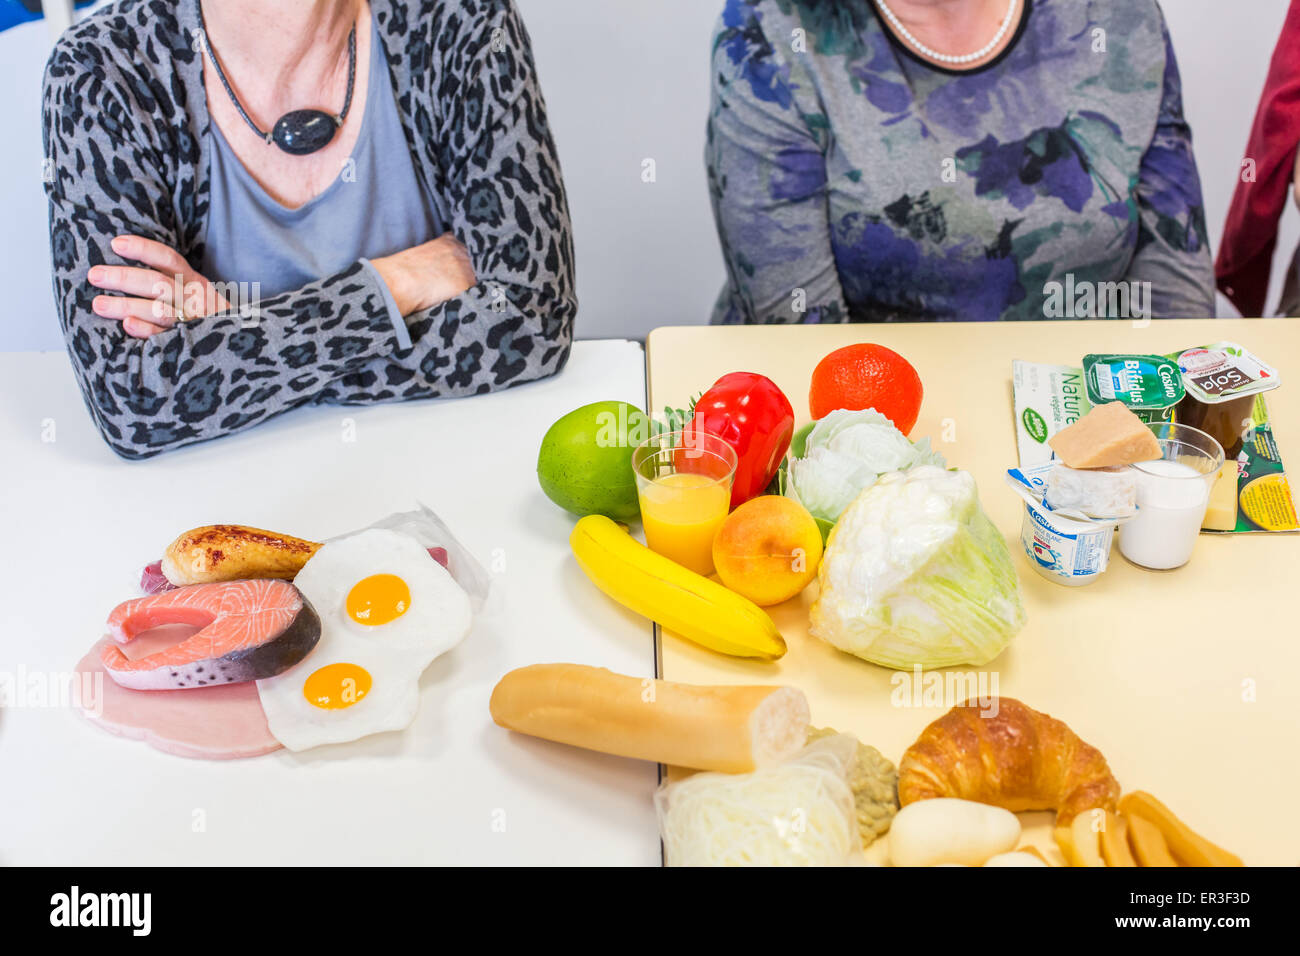 Un atelier diététique et nutrition education thérapeutique chez les patients atteints d'ostéoporose. L'hôpital de Bordeaux, France. Banque D'Images